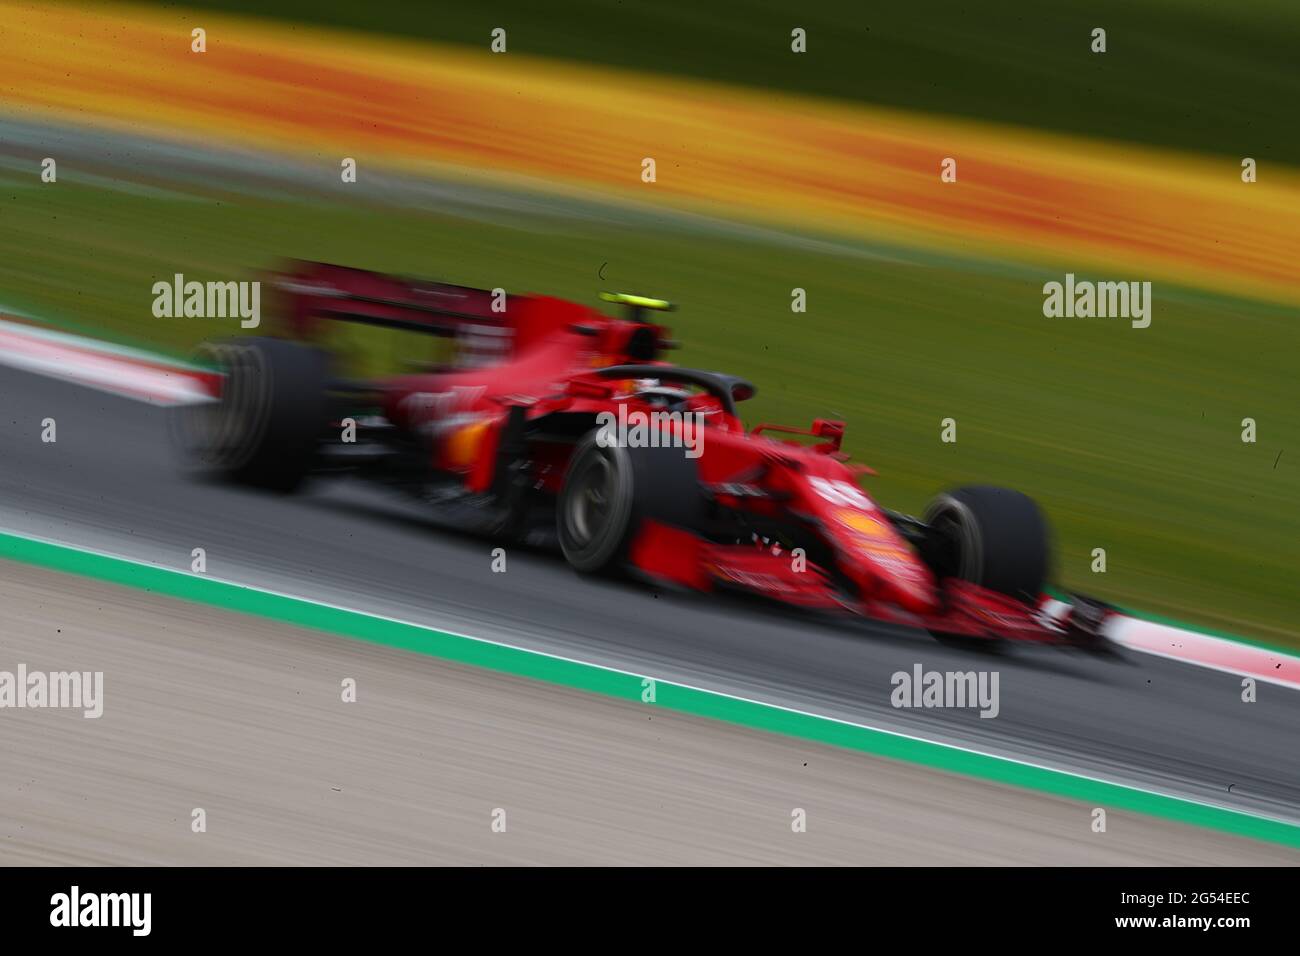 55 Carlos Sainz Jr Scuderia Ferrari. Formula 1 Campionato del mondo 2021, GP di Stiria 2021, 24-27 giugno 2021 Foto Stock